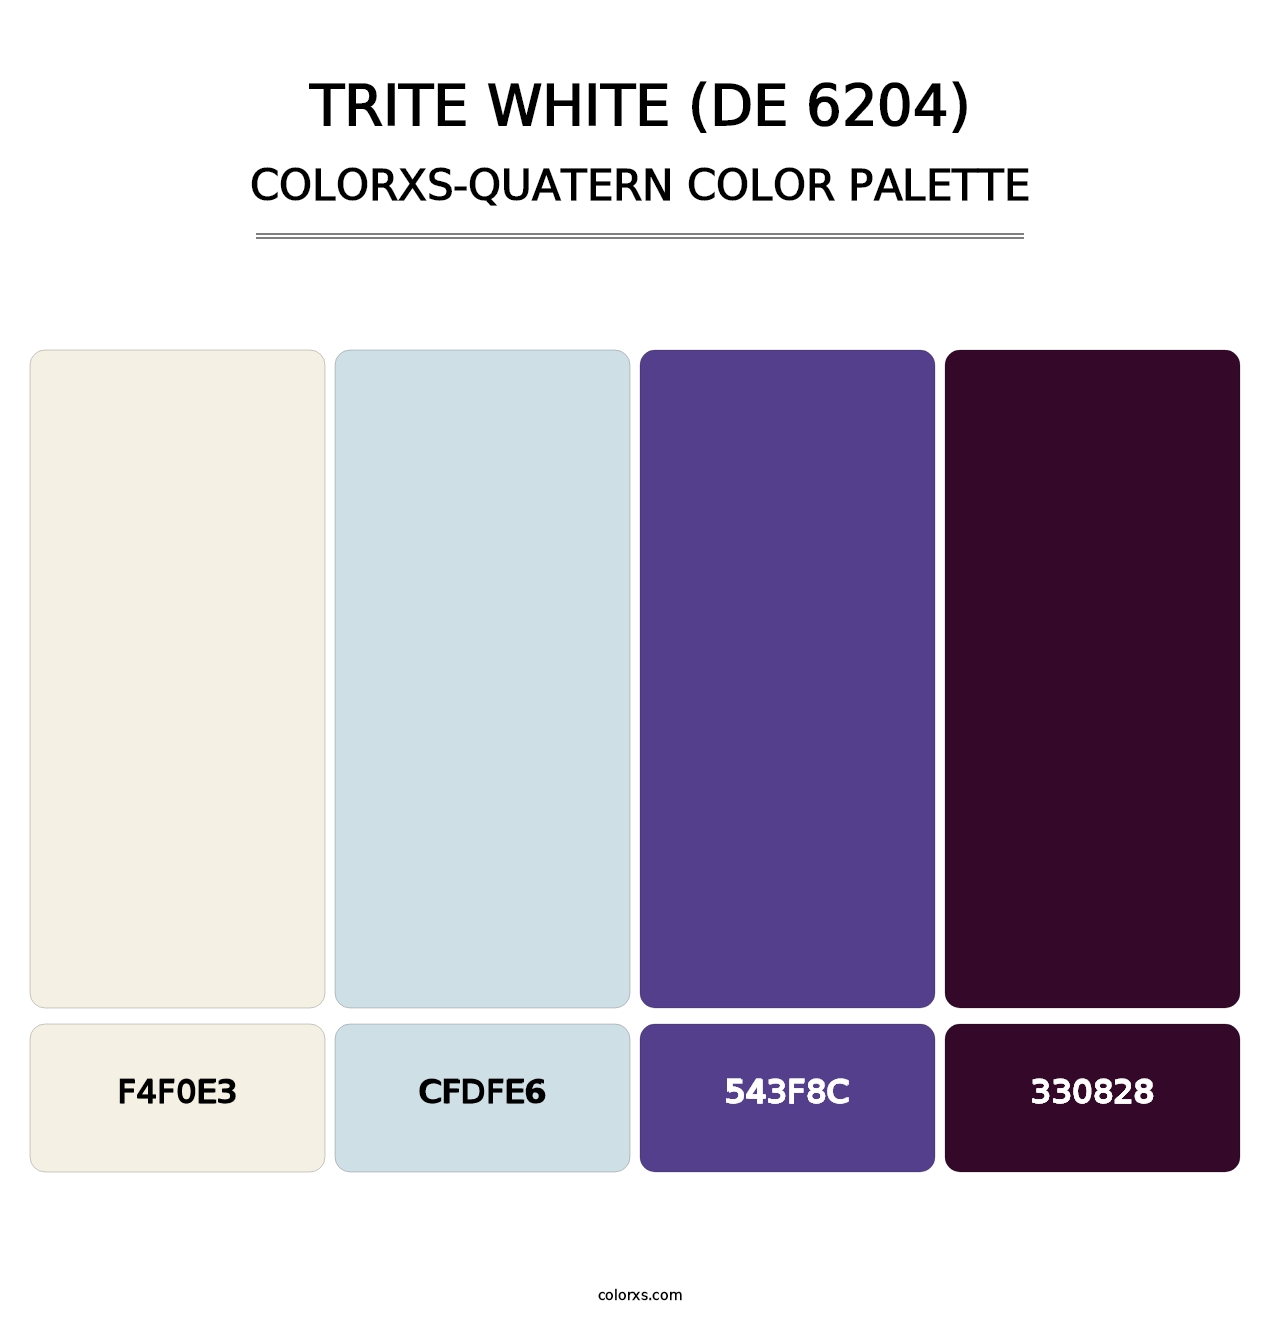 Trite White (DE 6204) - Colorxs Quatern Palette